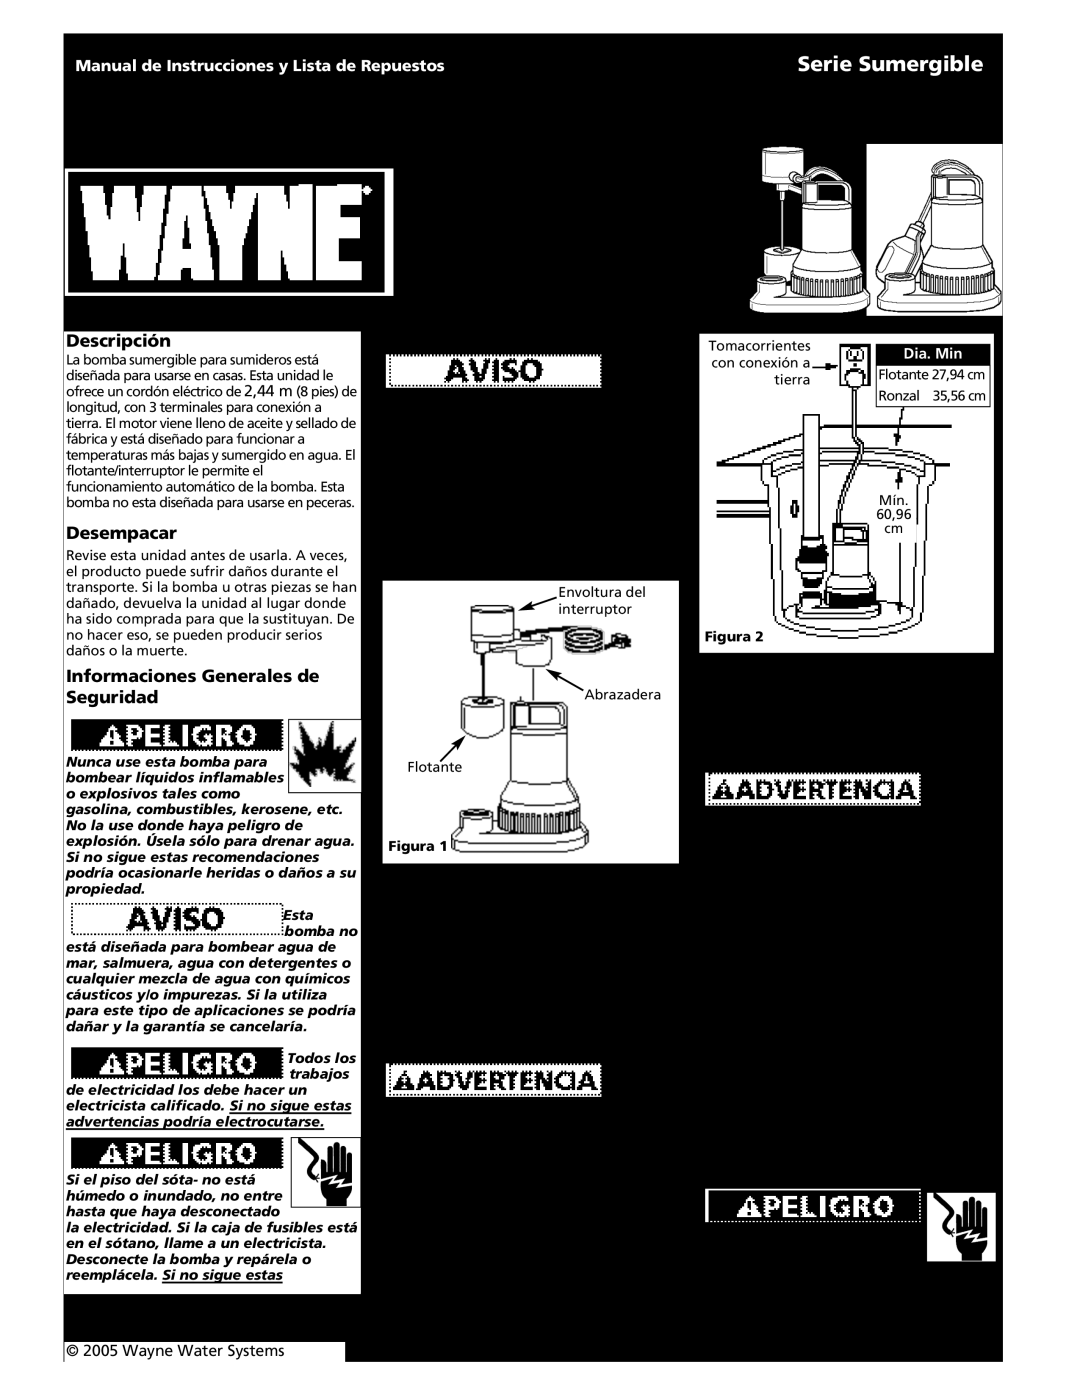 Wayne Submersible Series Serie Sumergible, Descripción, Desempacar, Ensamblaje, Informaciones Generales de Seguridad, 6 Sp 